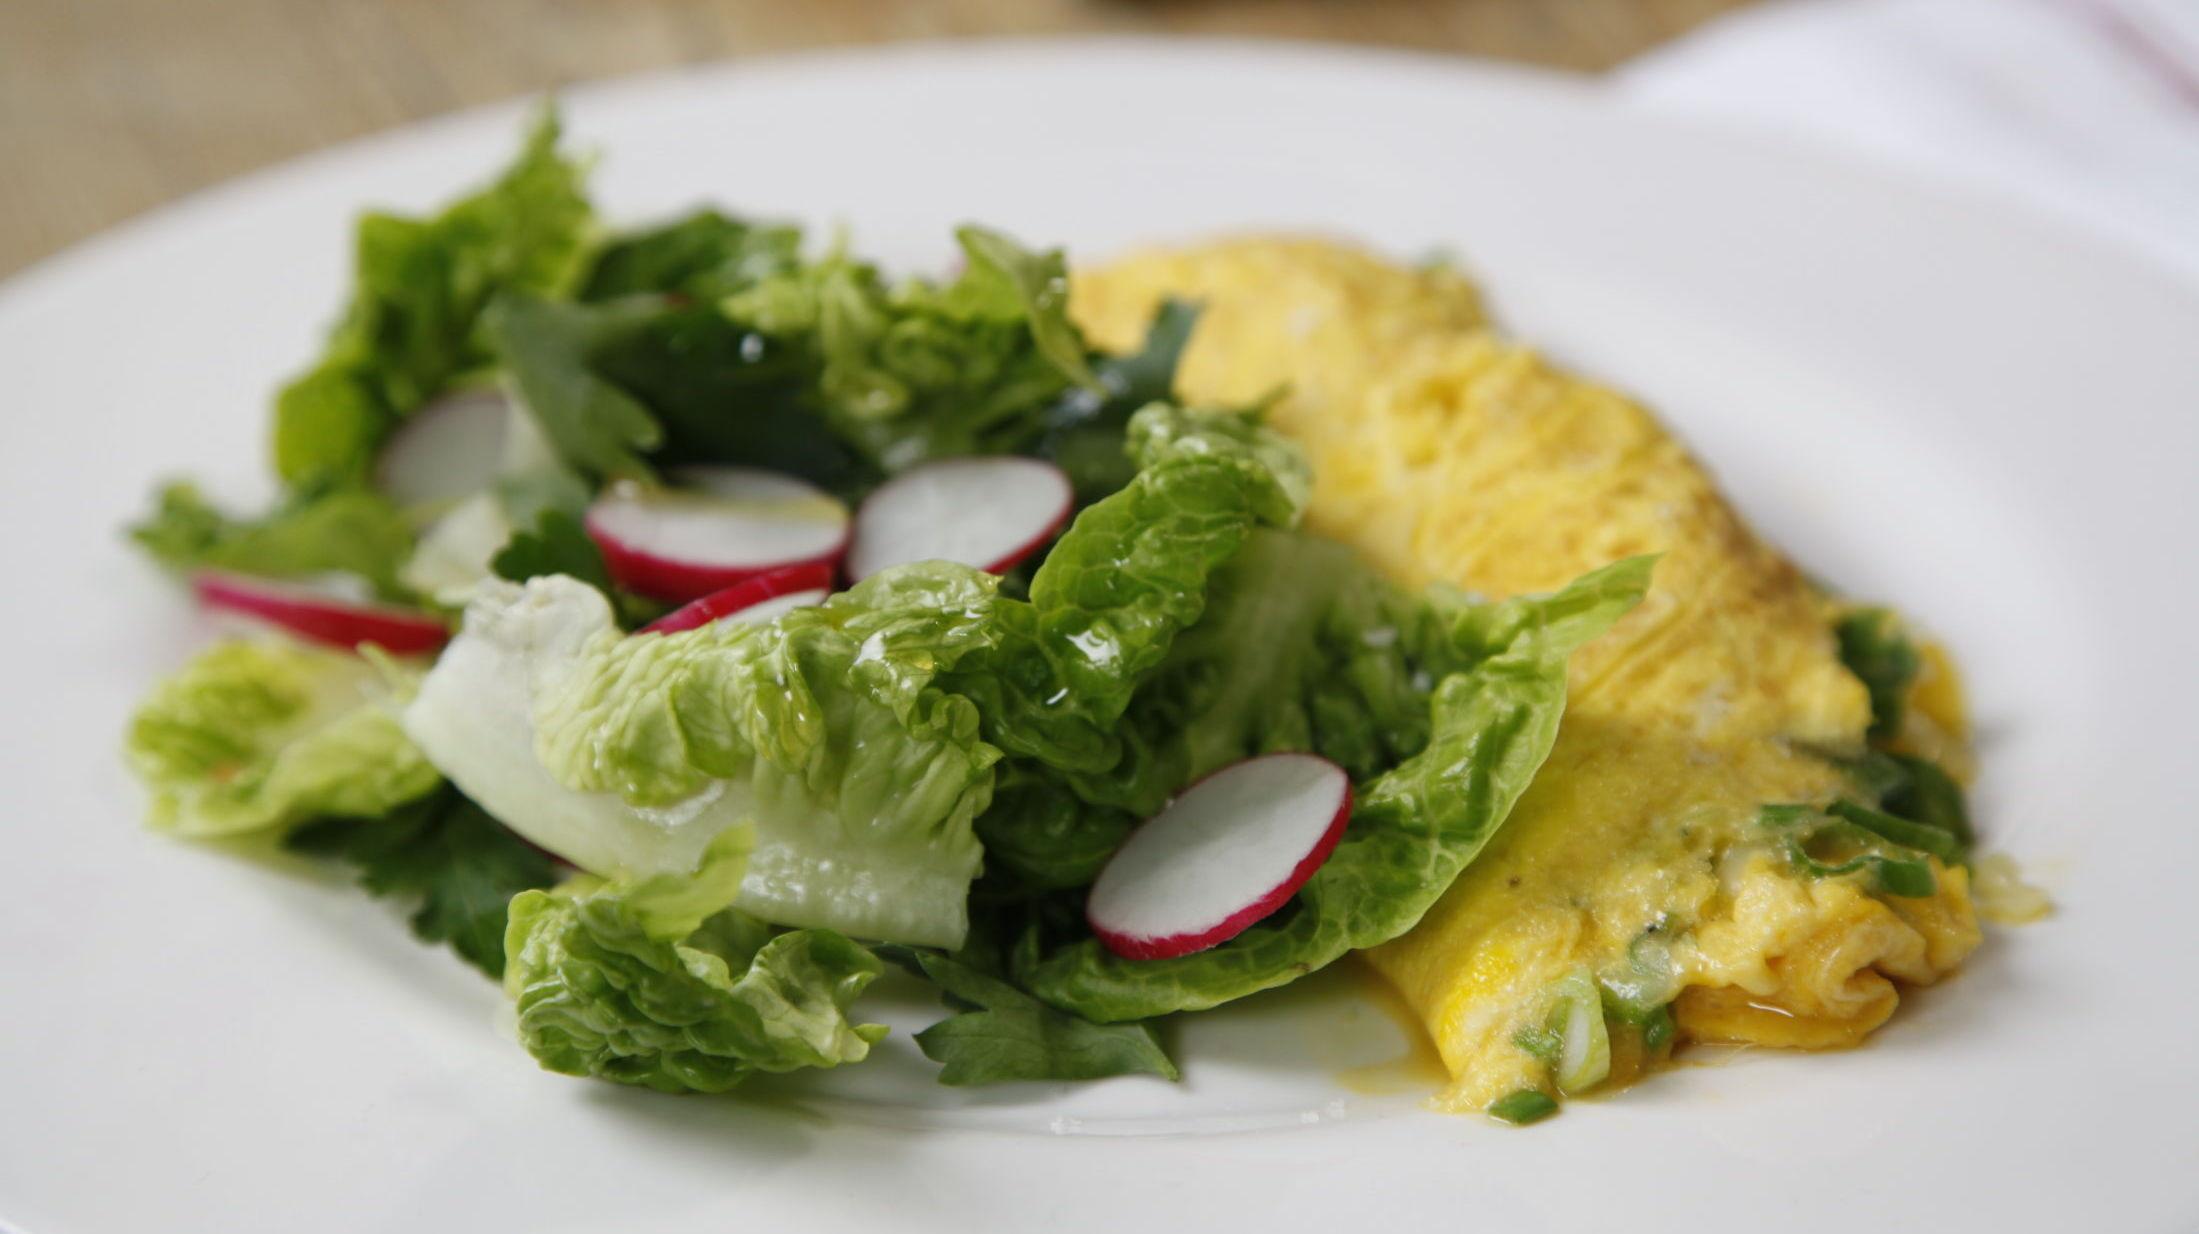 SMAK AV VÅR: Egg er bra vårmat, når det går mot lette tider. Her er omelett med vårløk og sukkererter. Foto: Luke Schilling